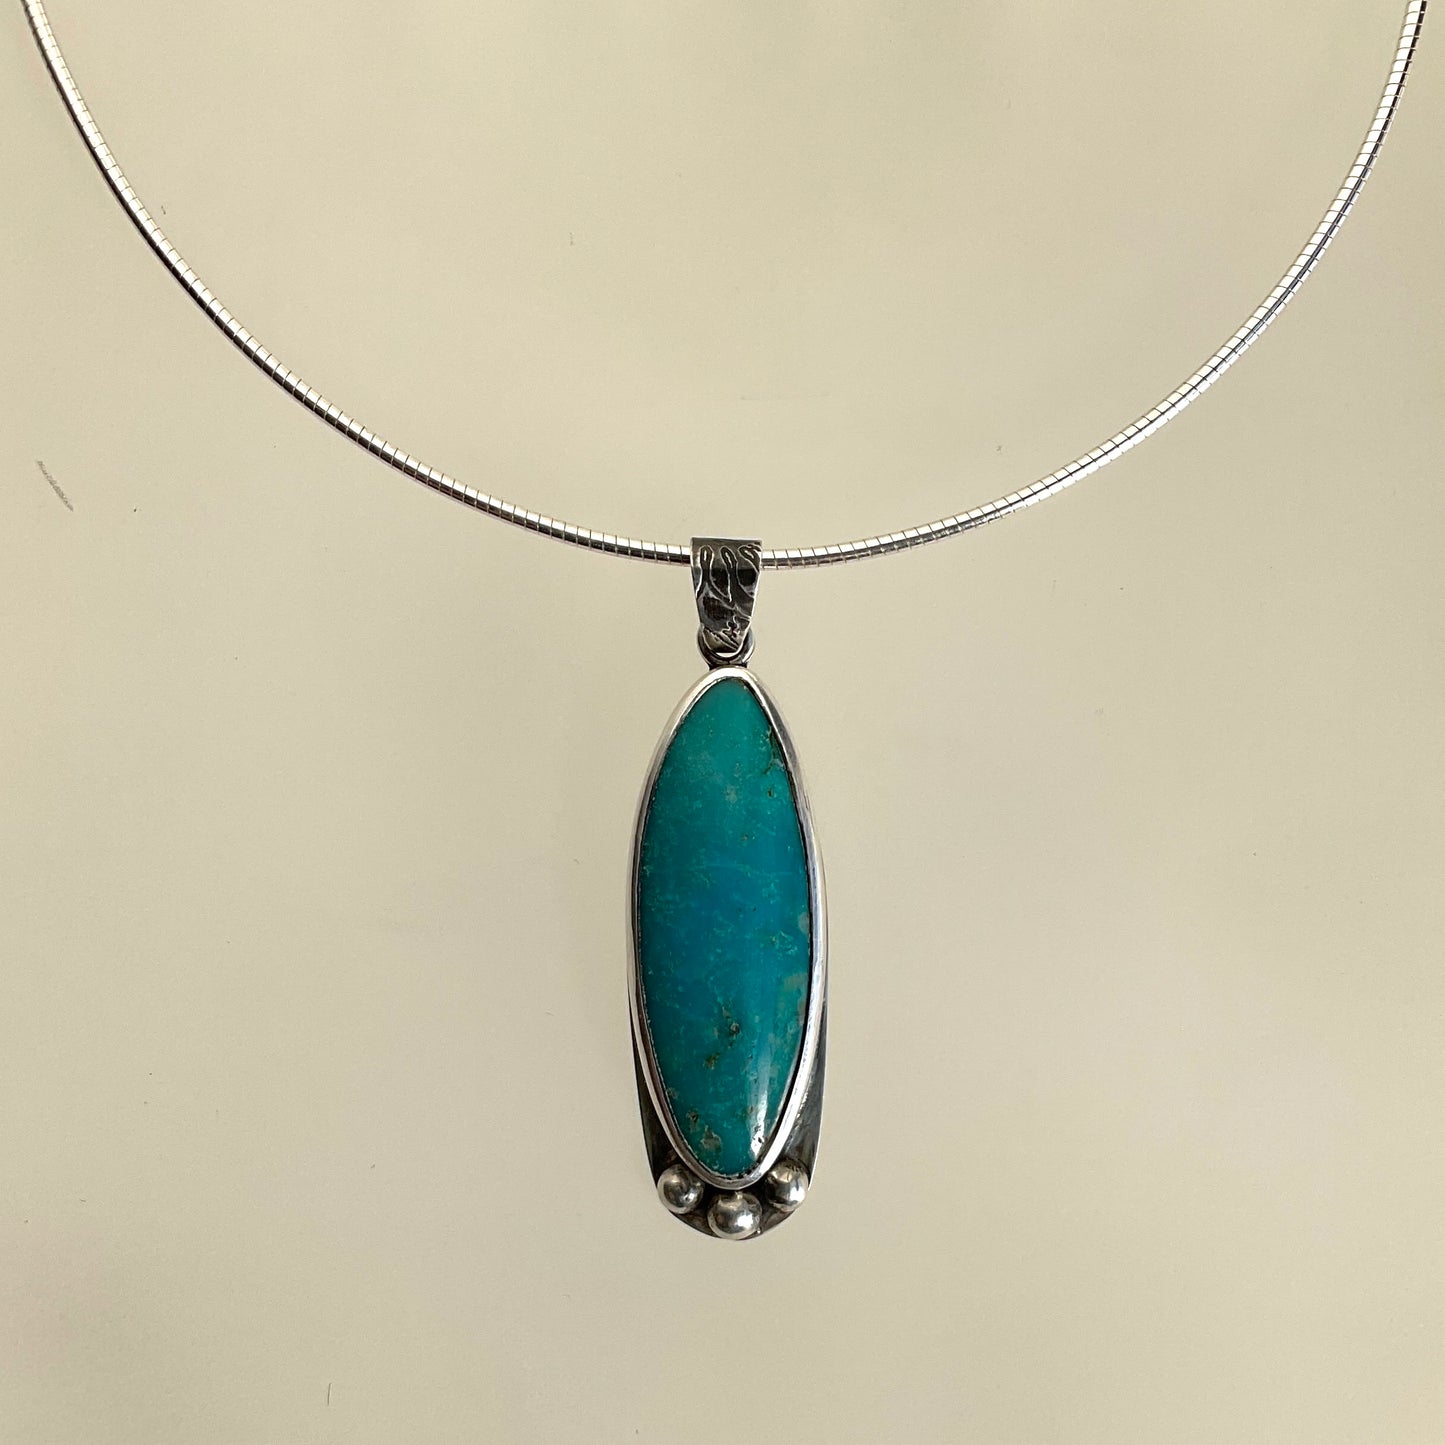 Galili Ellis, Oval Turquoise Pendant Necklace